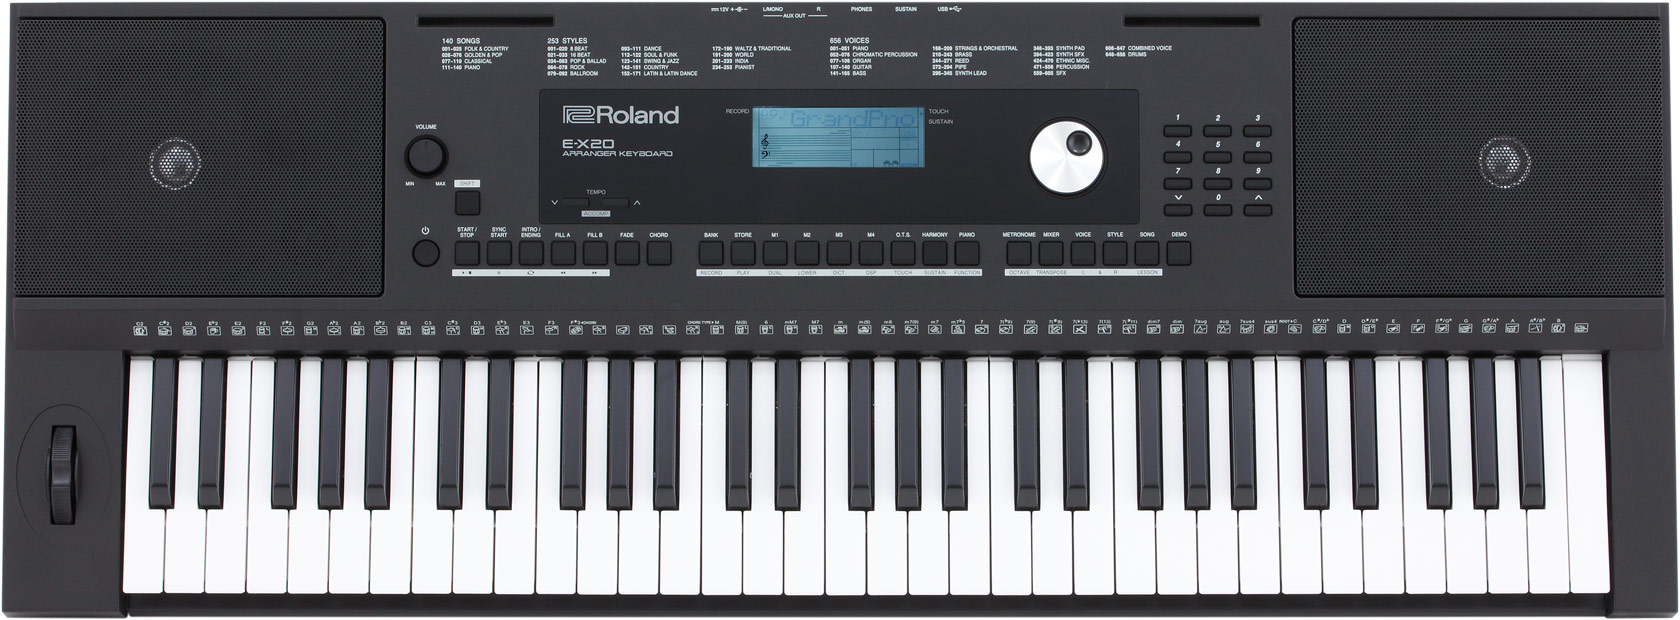 Roland E-x20 keyboard